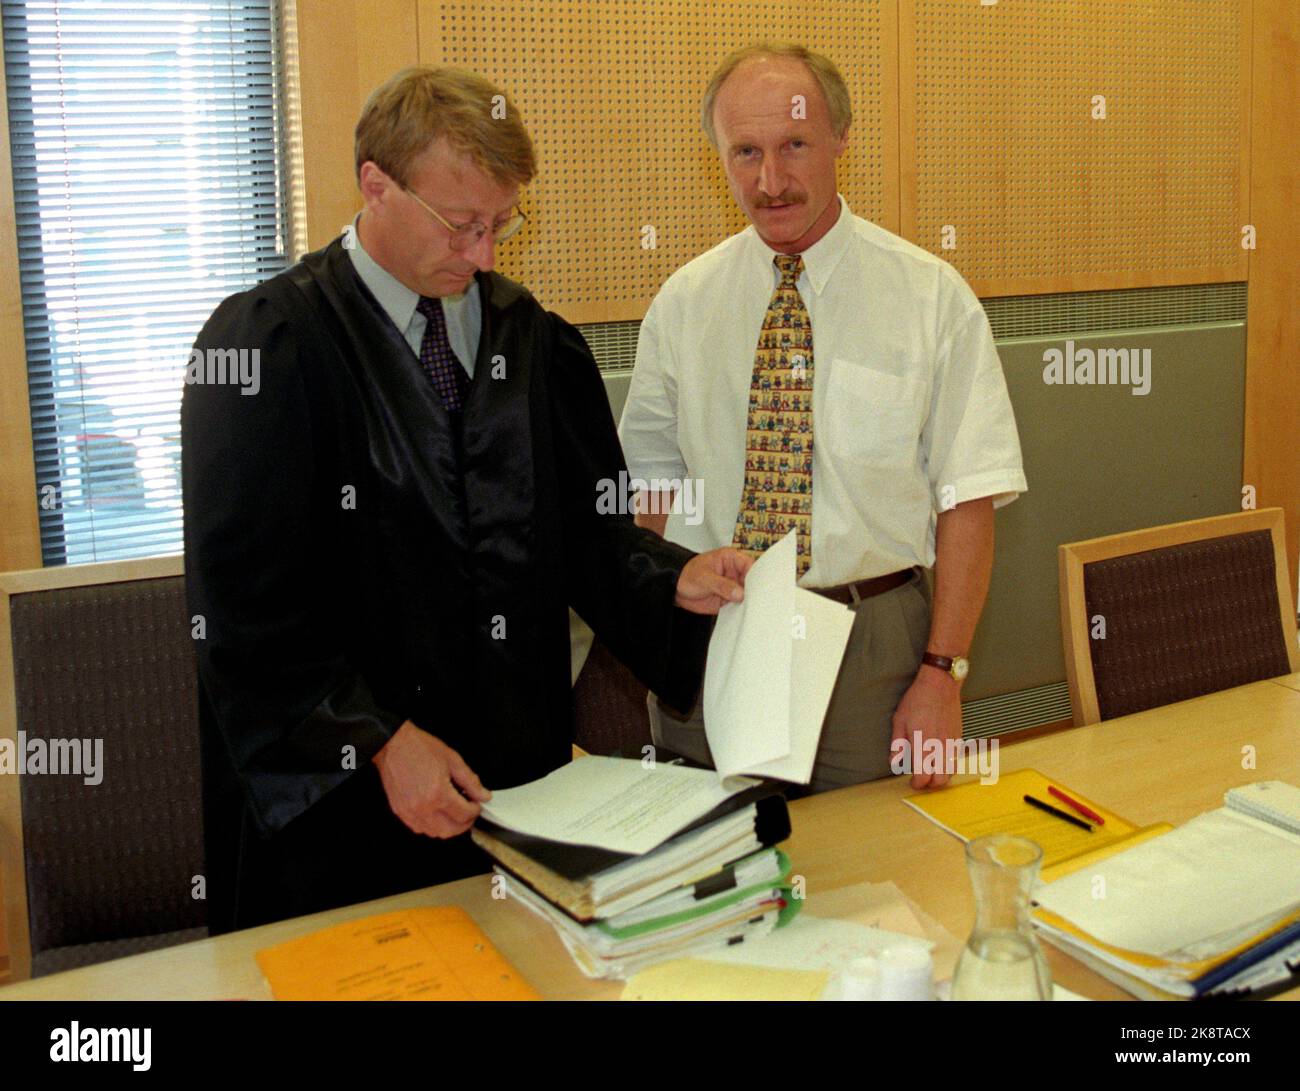 Oslo 19970612: Bjørn Hamre s.m. Son avocat Vidar Strømme (TV) au tribunal municipal d'Oslo. Hamre est allé à des poursuites contre Lars Rise, ancien chef de la coupe du monde du cyclisme 1993. Photo: Knut falch / NTB. Banque D'Images